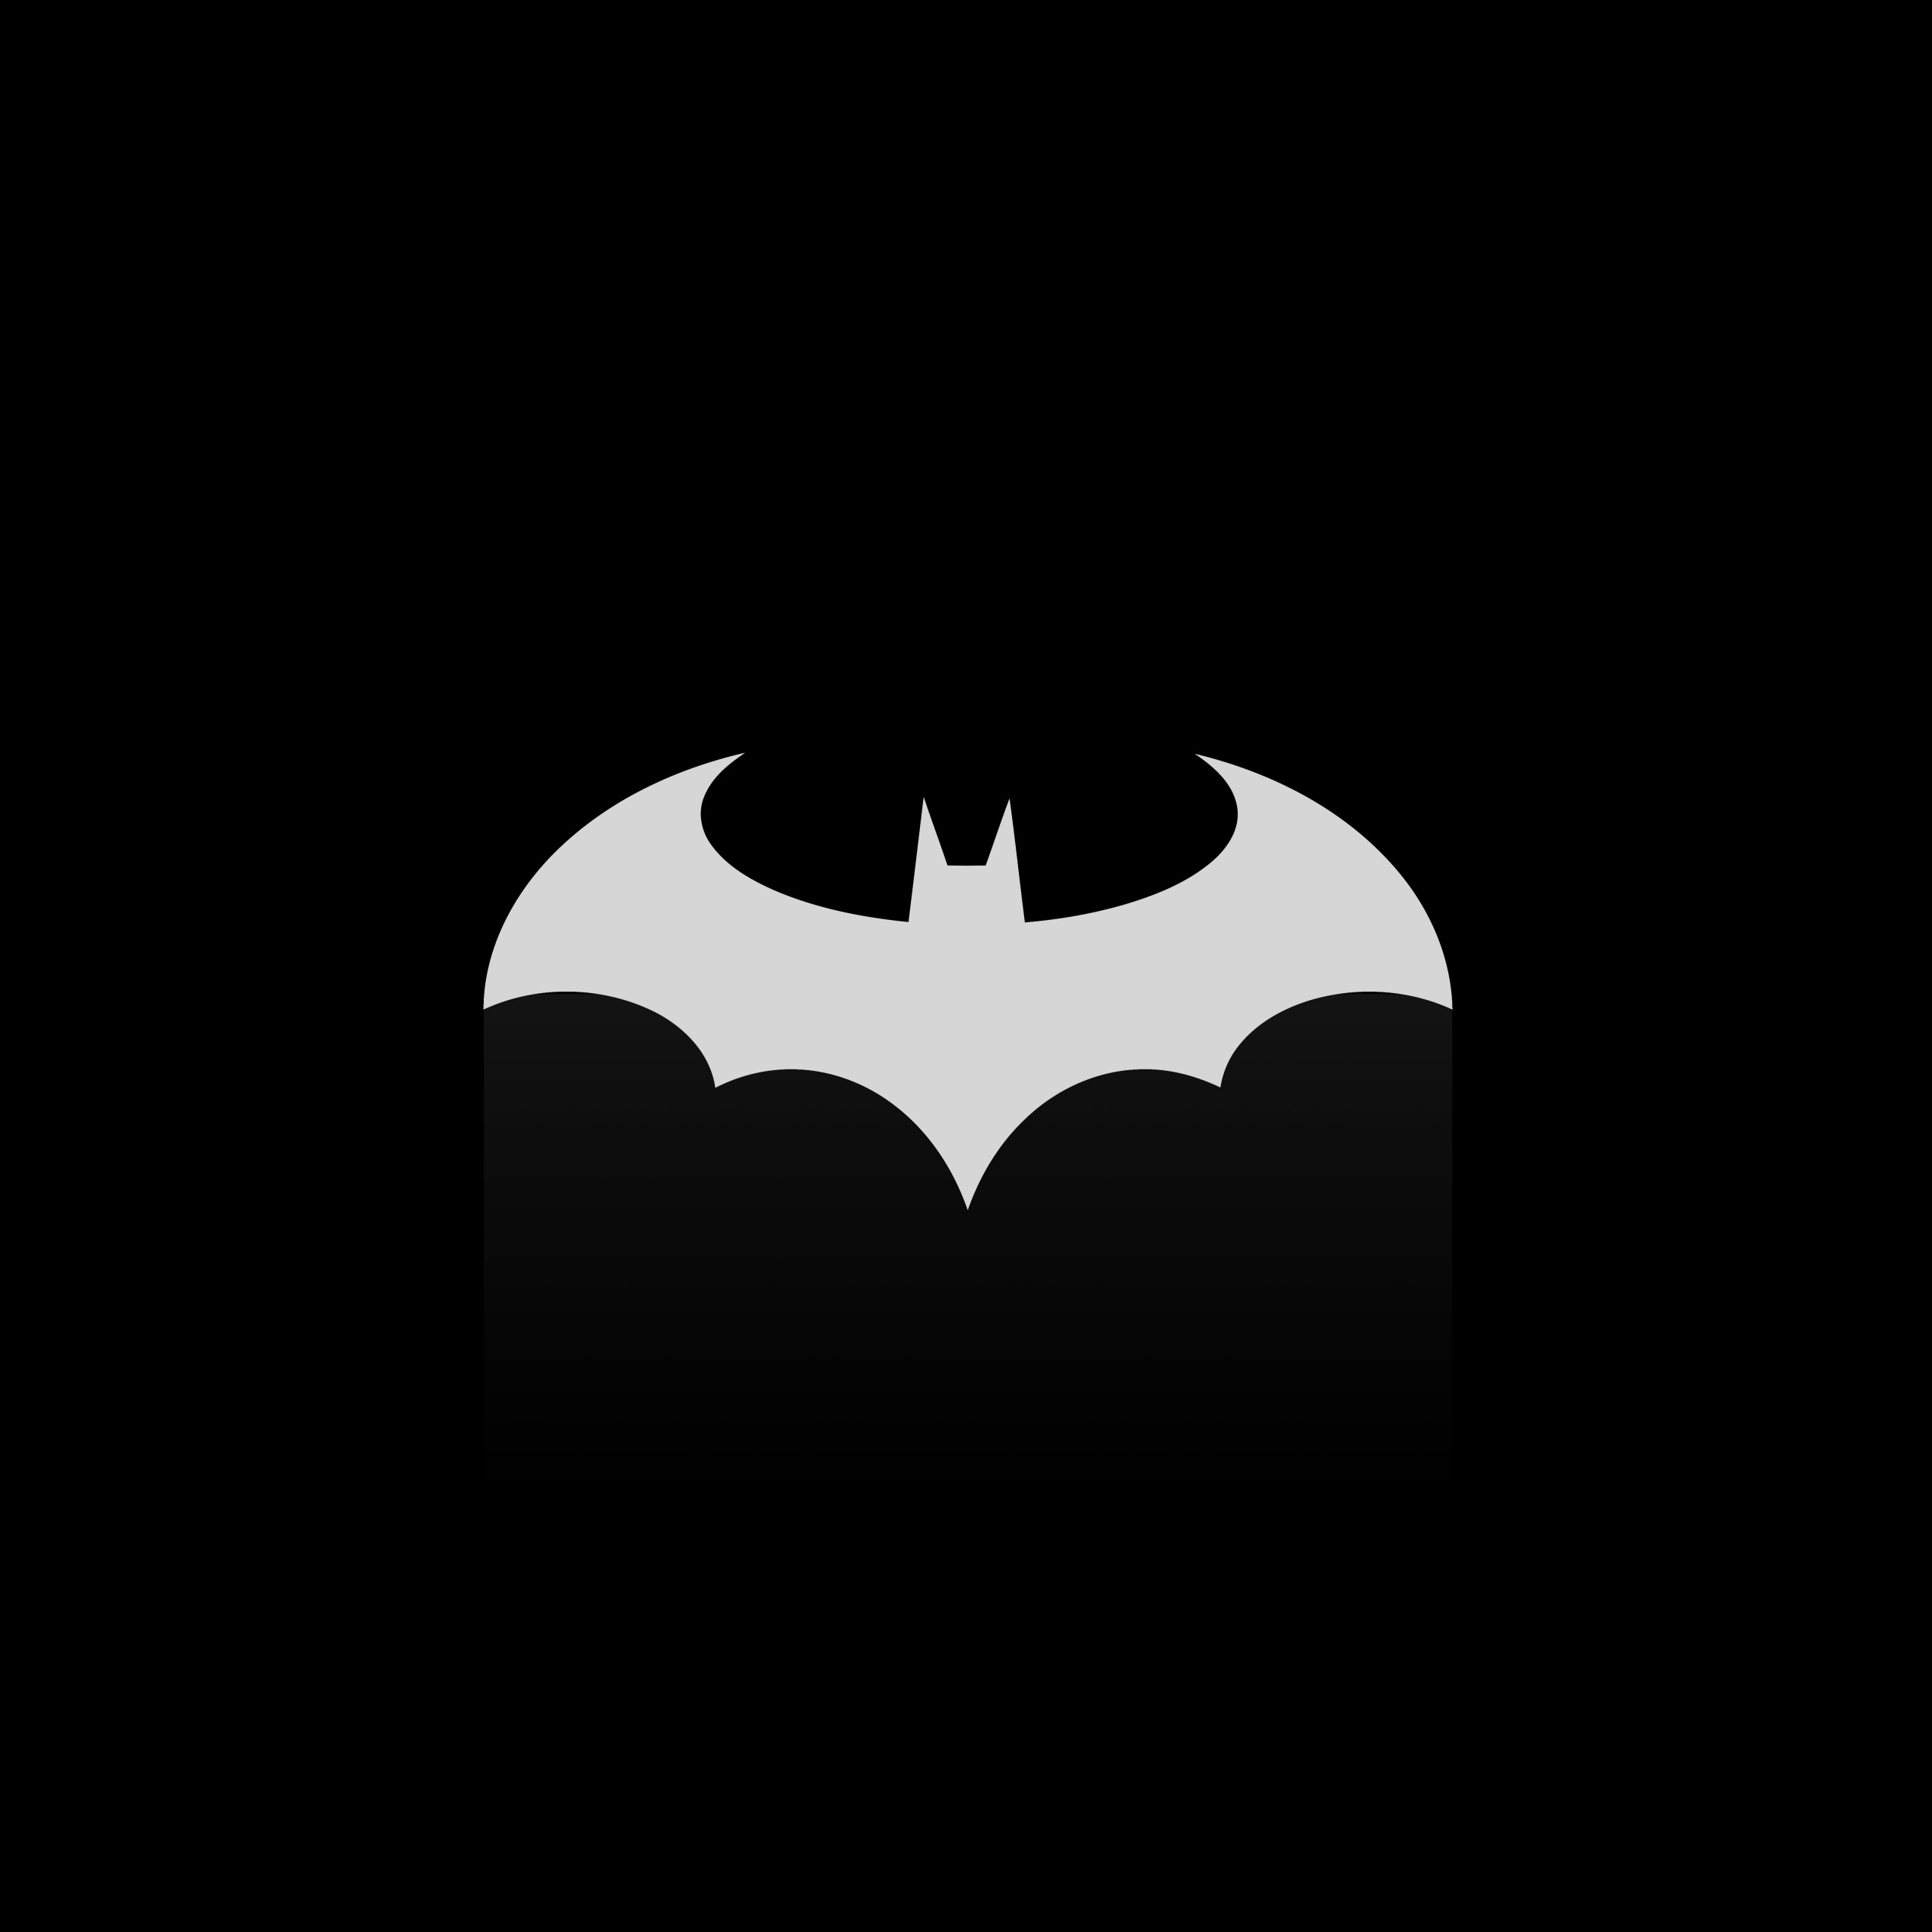 Dấu hiệu Batman: Nếu bạn là tín đồ của Batman, hãy đến và xem ngay bức ảnh với dấu hiệu của Người dơi đầy bí ẩn và huyền bí. Bức ảnh chứa đựng nhiều thông điệp để bạn khám phá và tìm hiểu về siêu anh hùng của đêm.